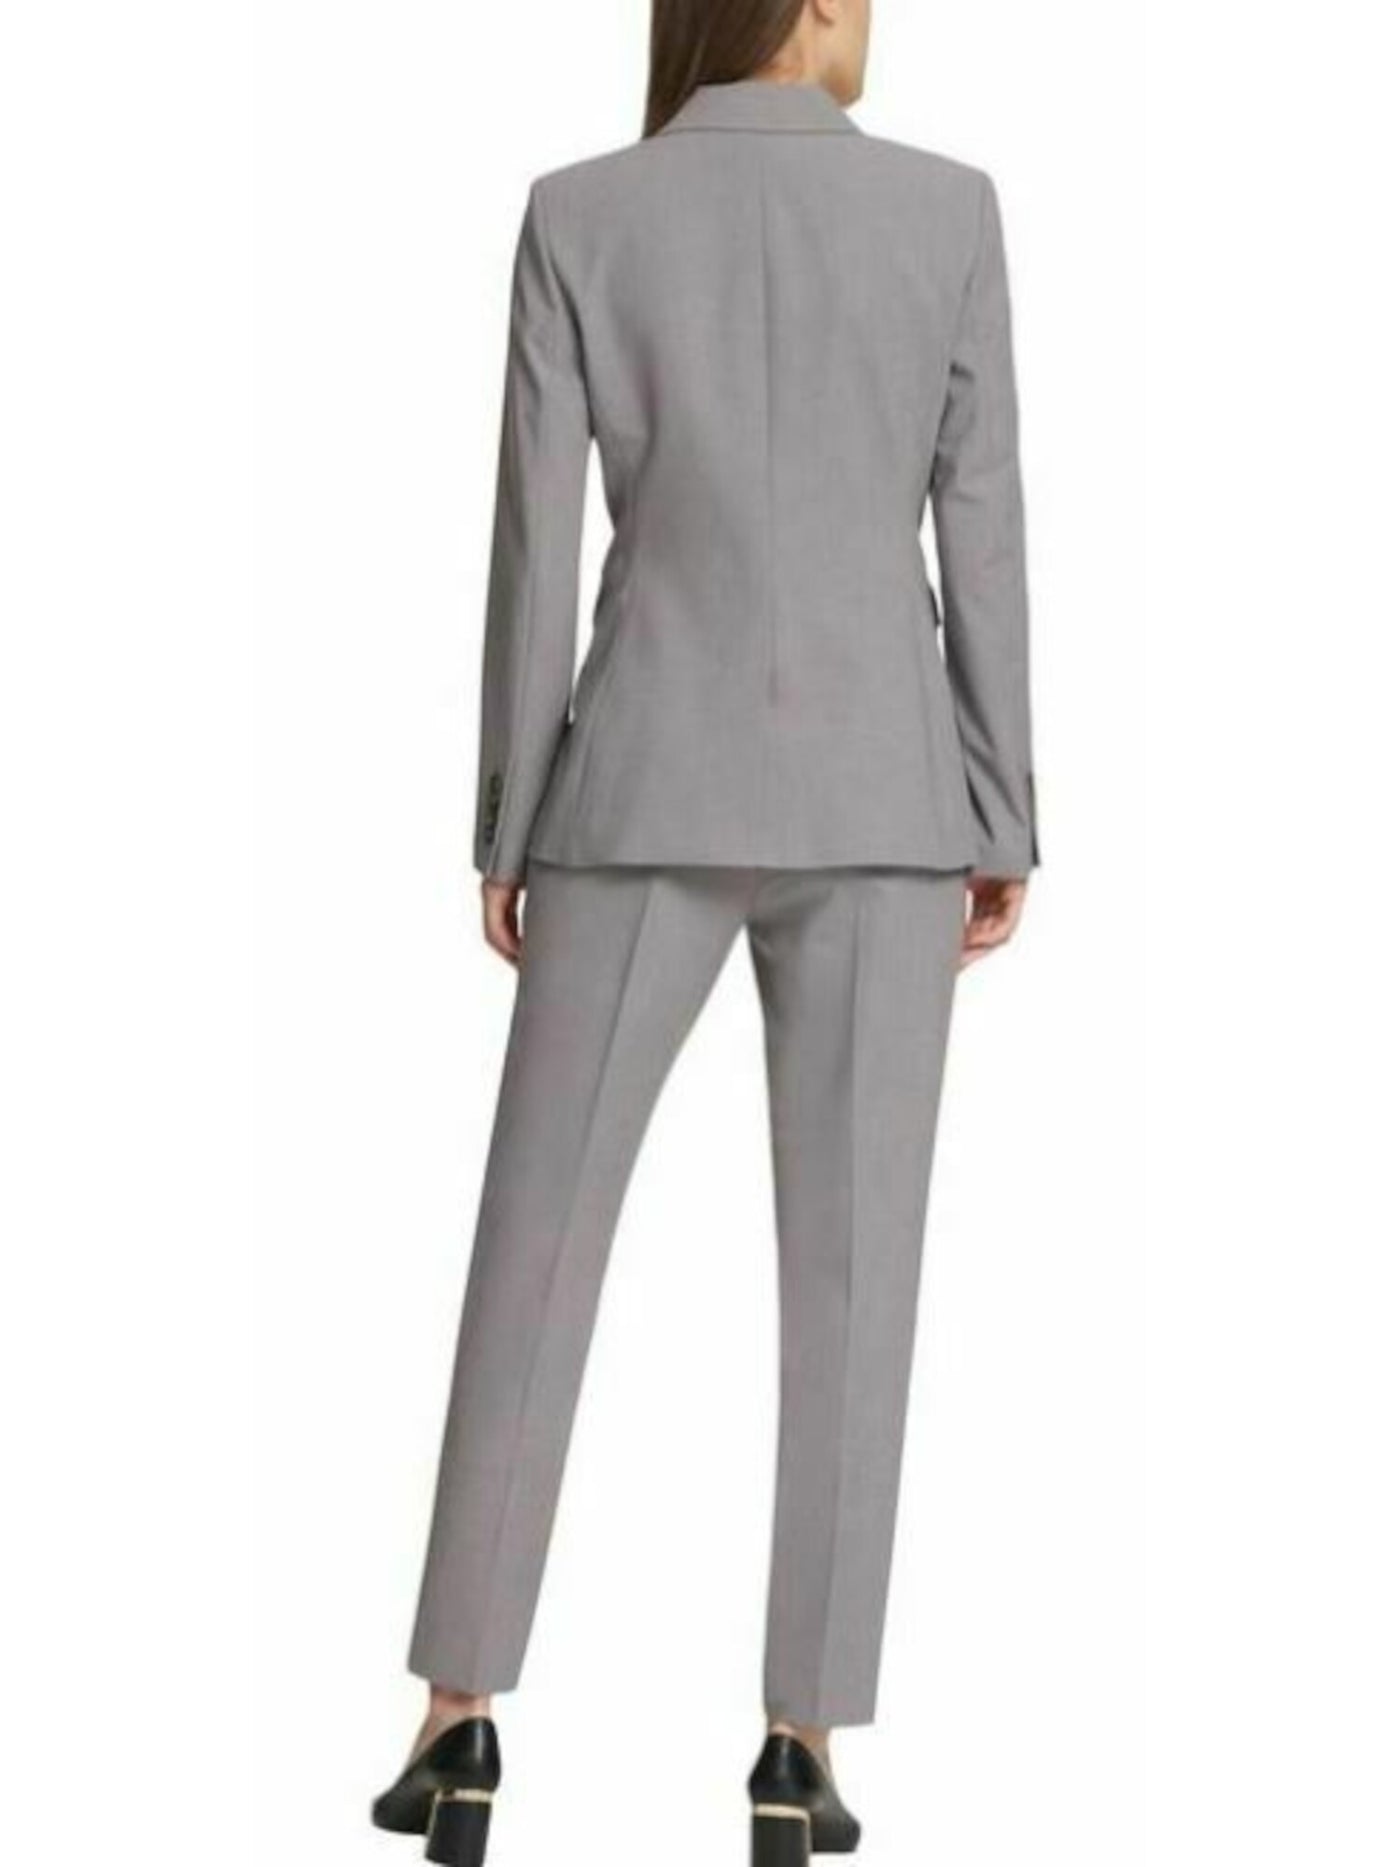 DKNY Womens Gray Wear To Work Blazer Jacket 16